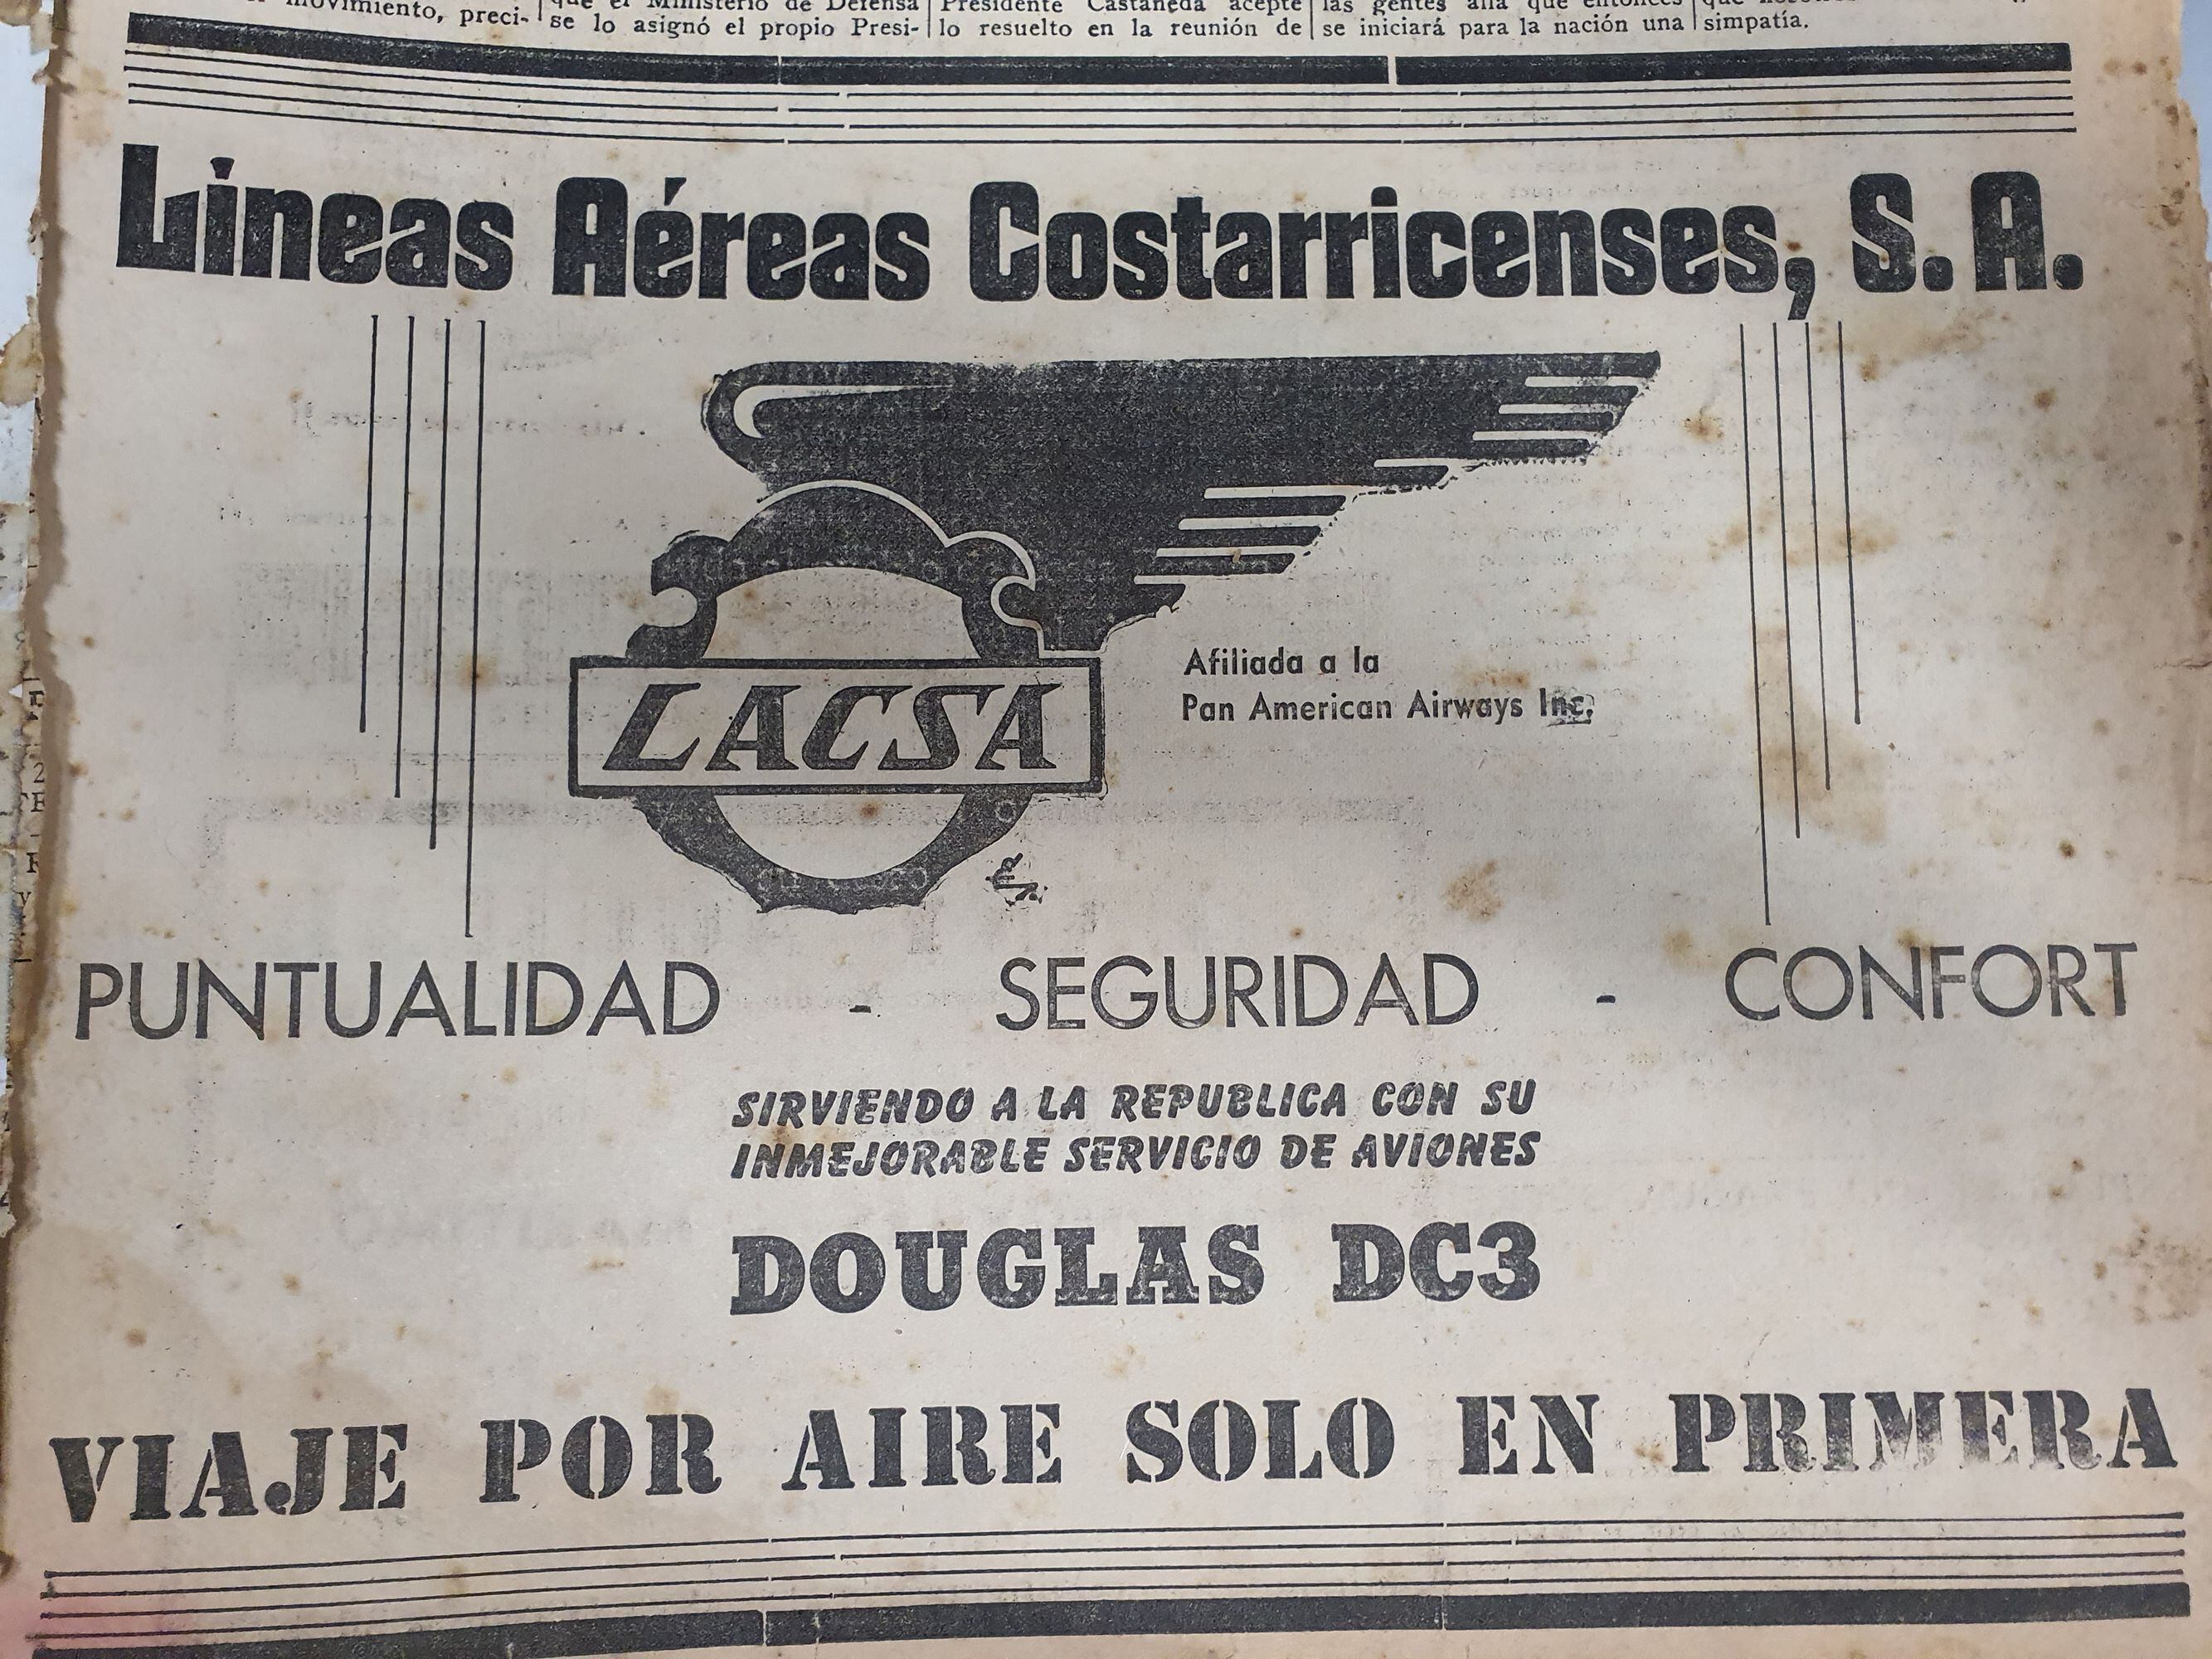 Lacsa anunció el 12 de octubre de 1946, en la primera edición de La Nación, sus nuevos aviones DC-3 y la 